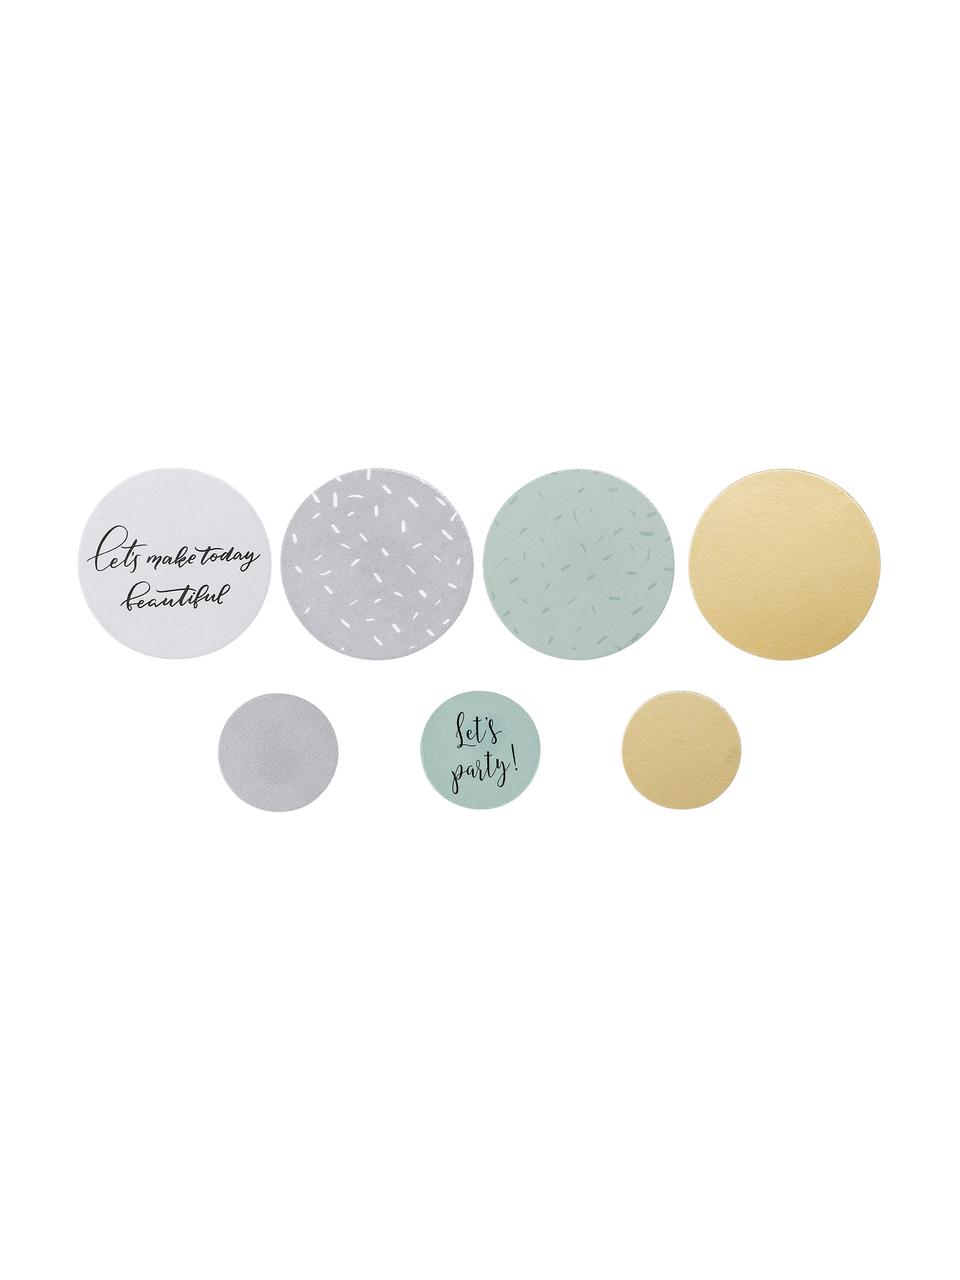 Confettis Round, 21 élém., Blanc, gris, vert menthe, couleur dorée